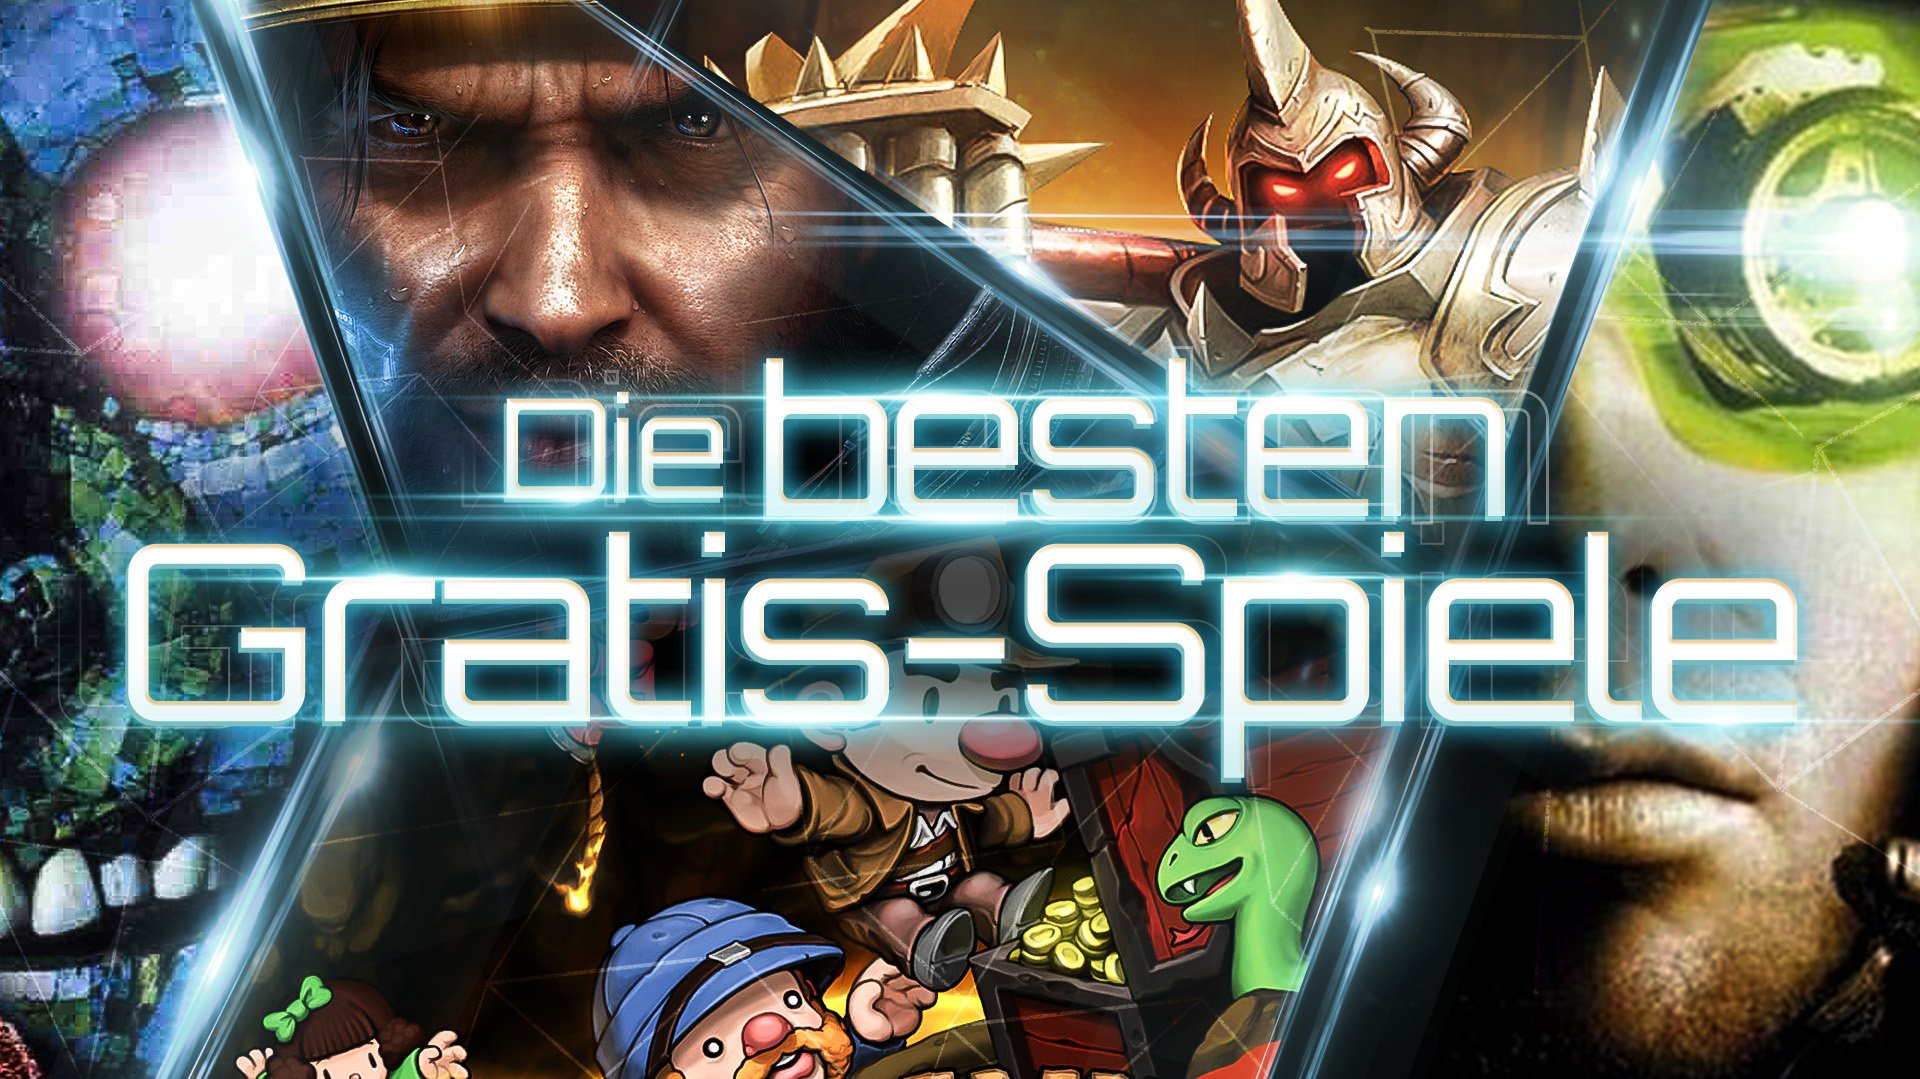 pc spiele kostenlos downloaden vollversionen deutsch